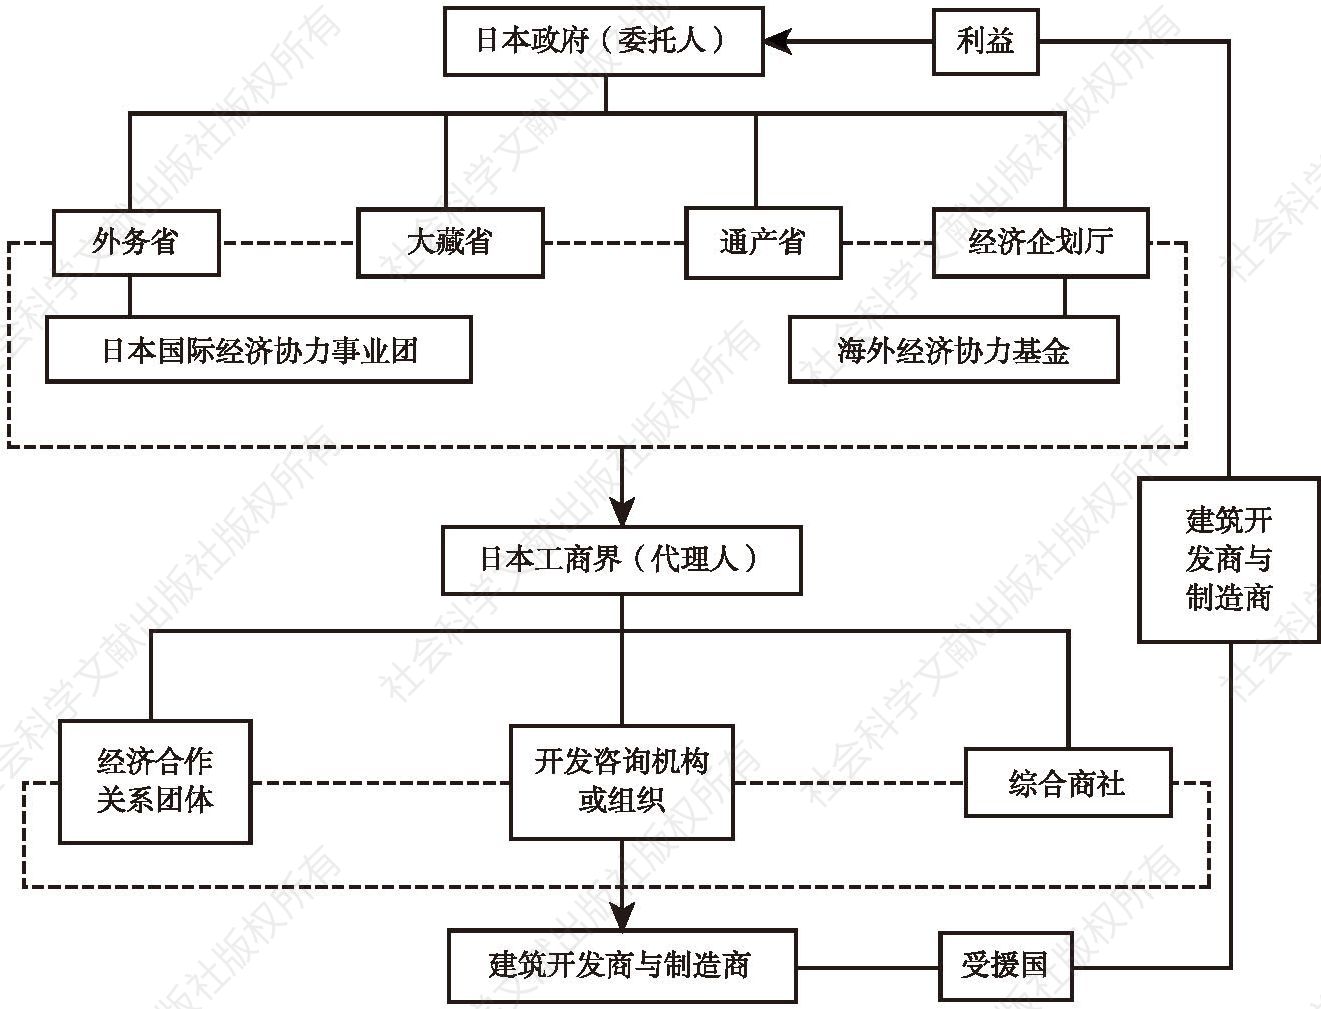 图2 日本政府开发援助的委托-代理模式